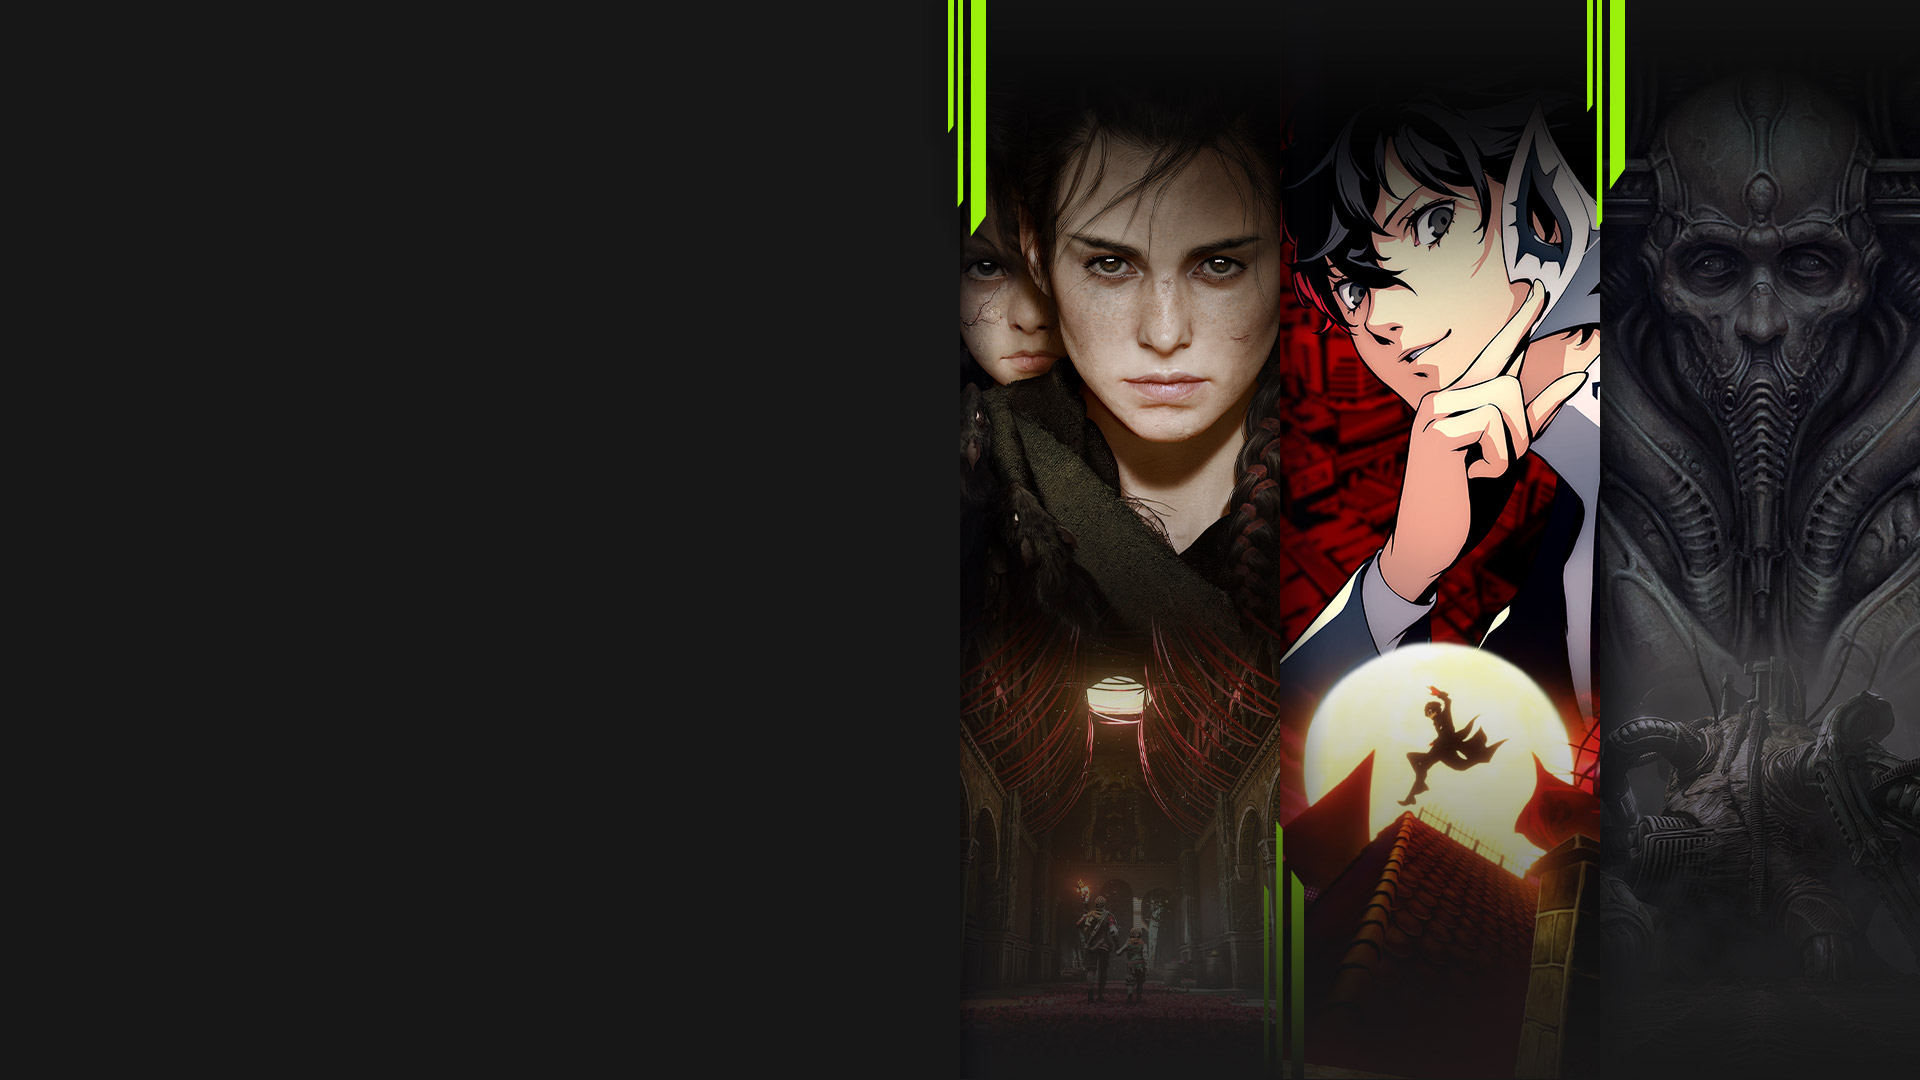 Obrázky z několika již dostupných her v rámci Xbox Game Pass, včetně A Plague Tale: Requiem, Persona 5 Royal, Scorn a Chivalry 2